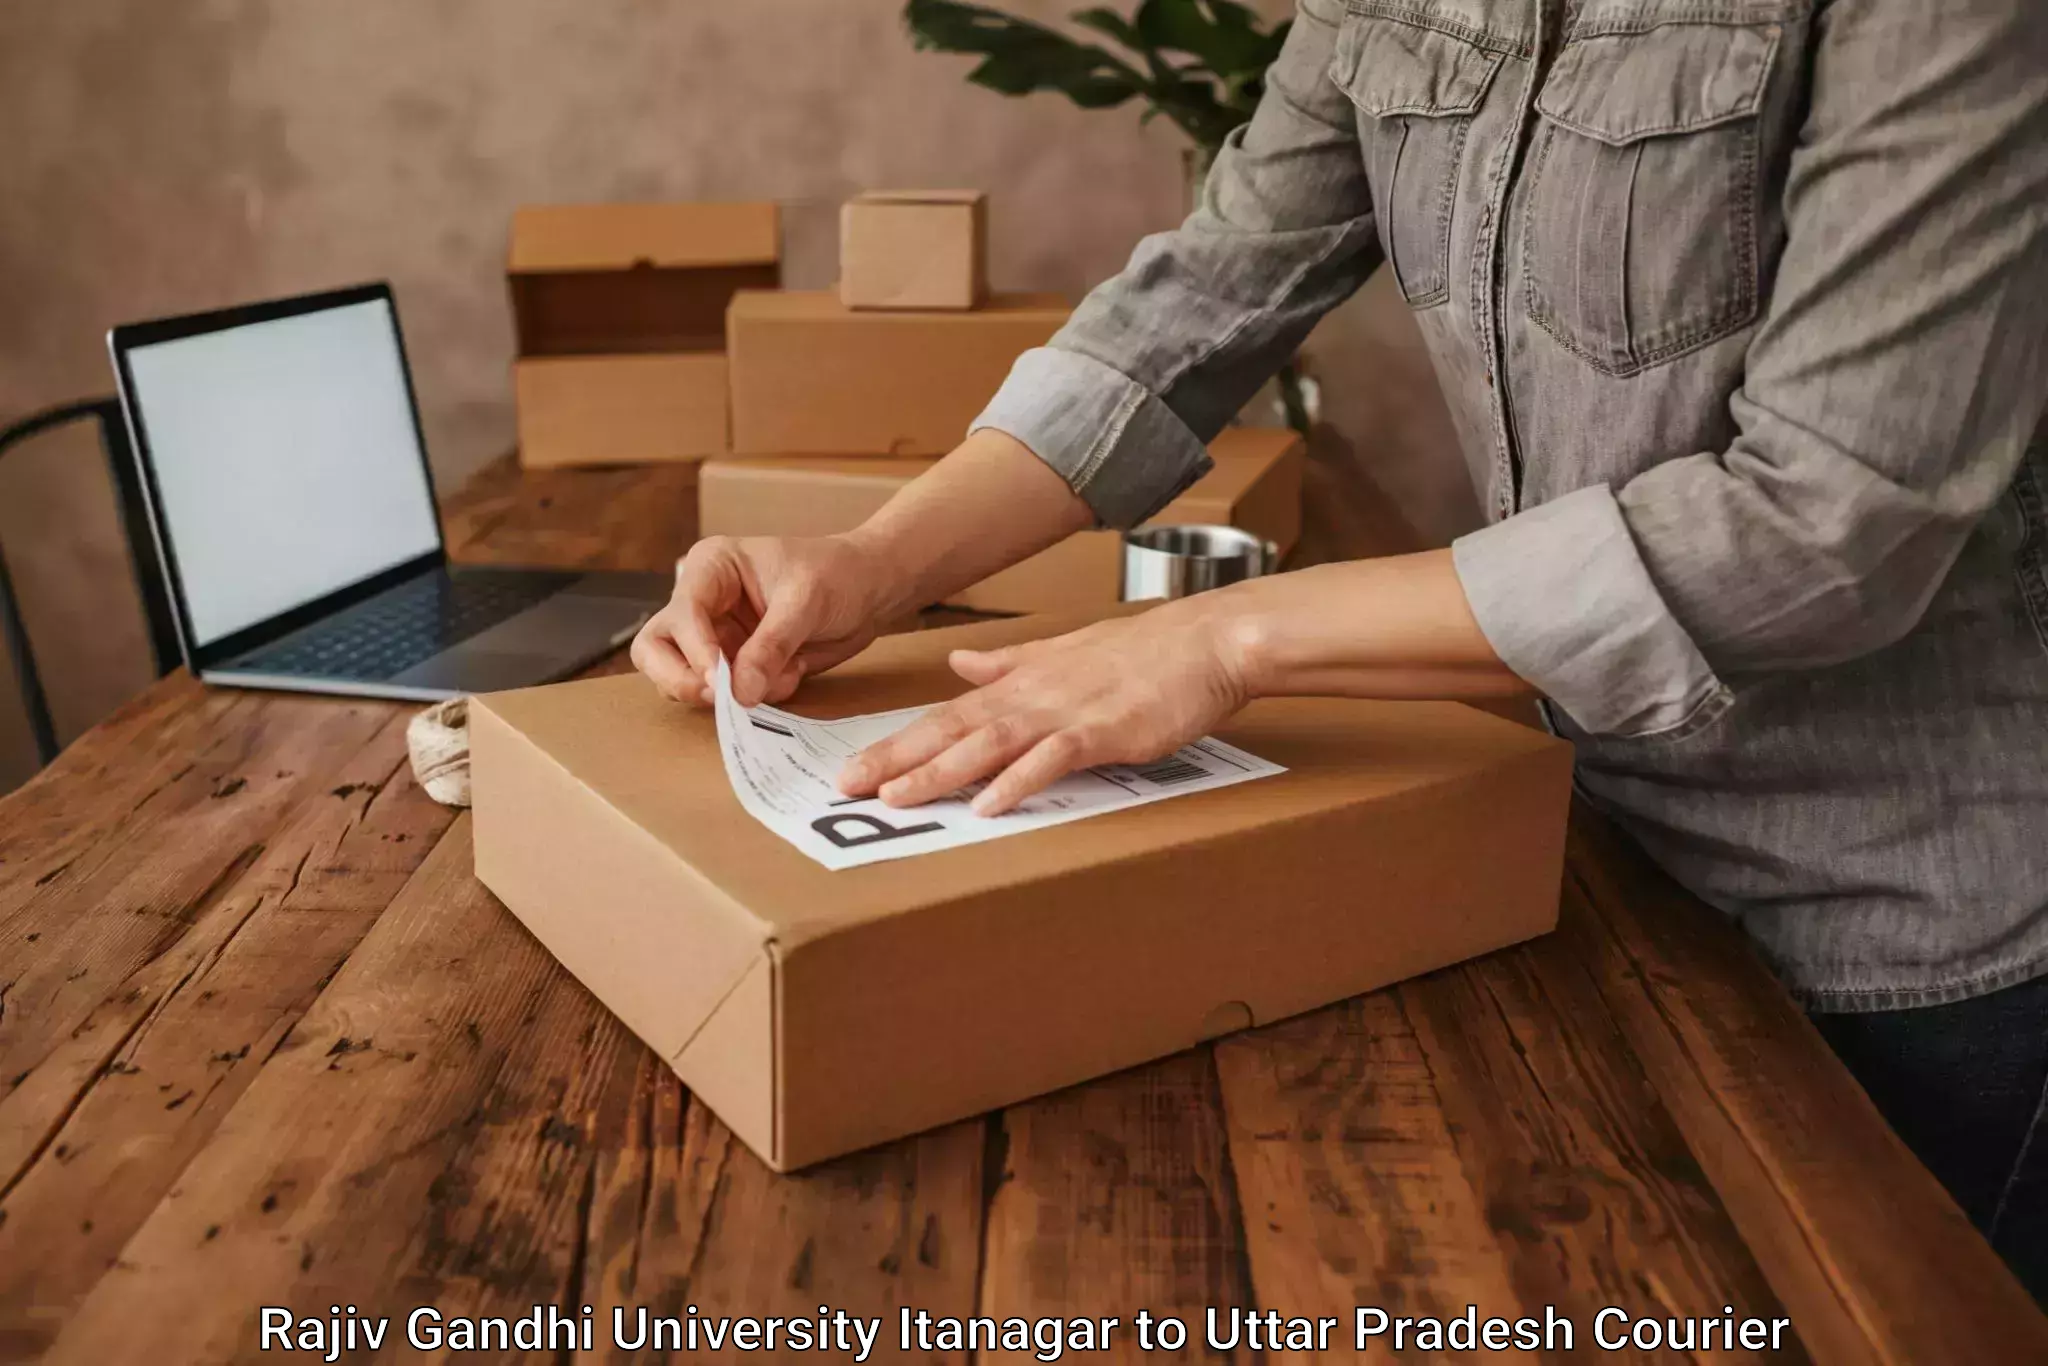 Professional courier handling Rajiv Gandhi University Itanagar to Agra